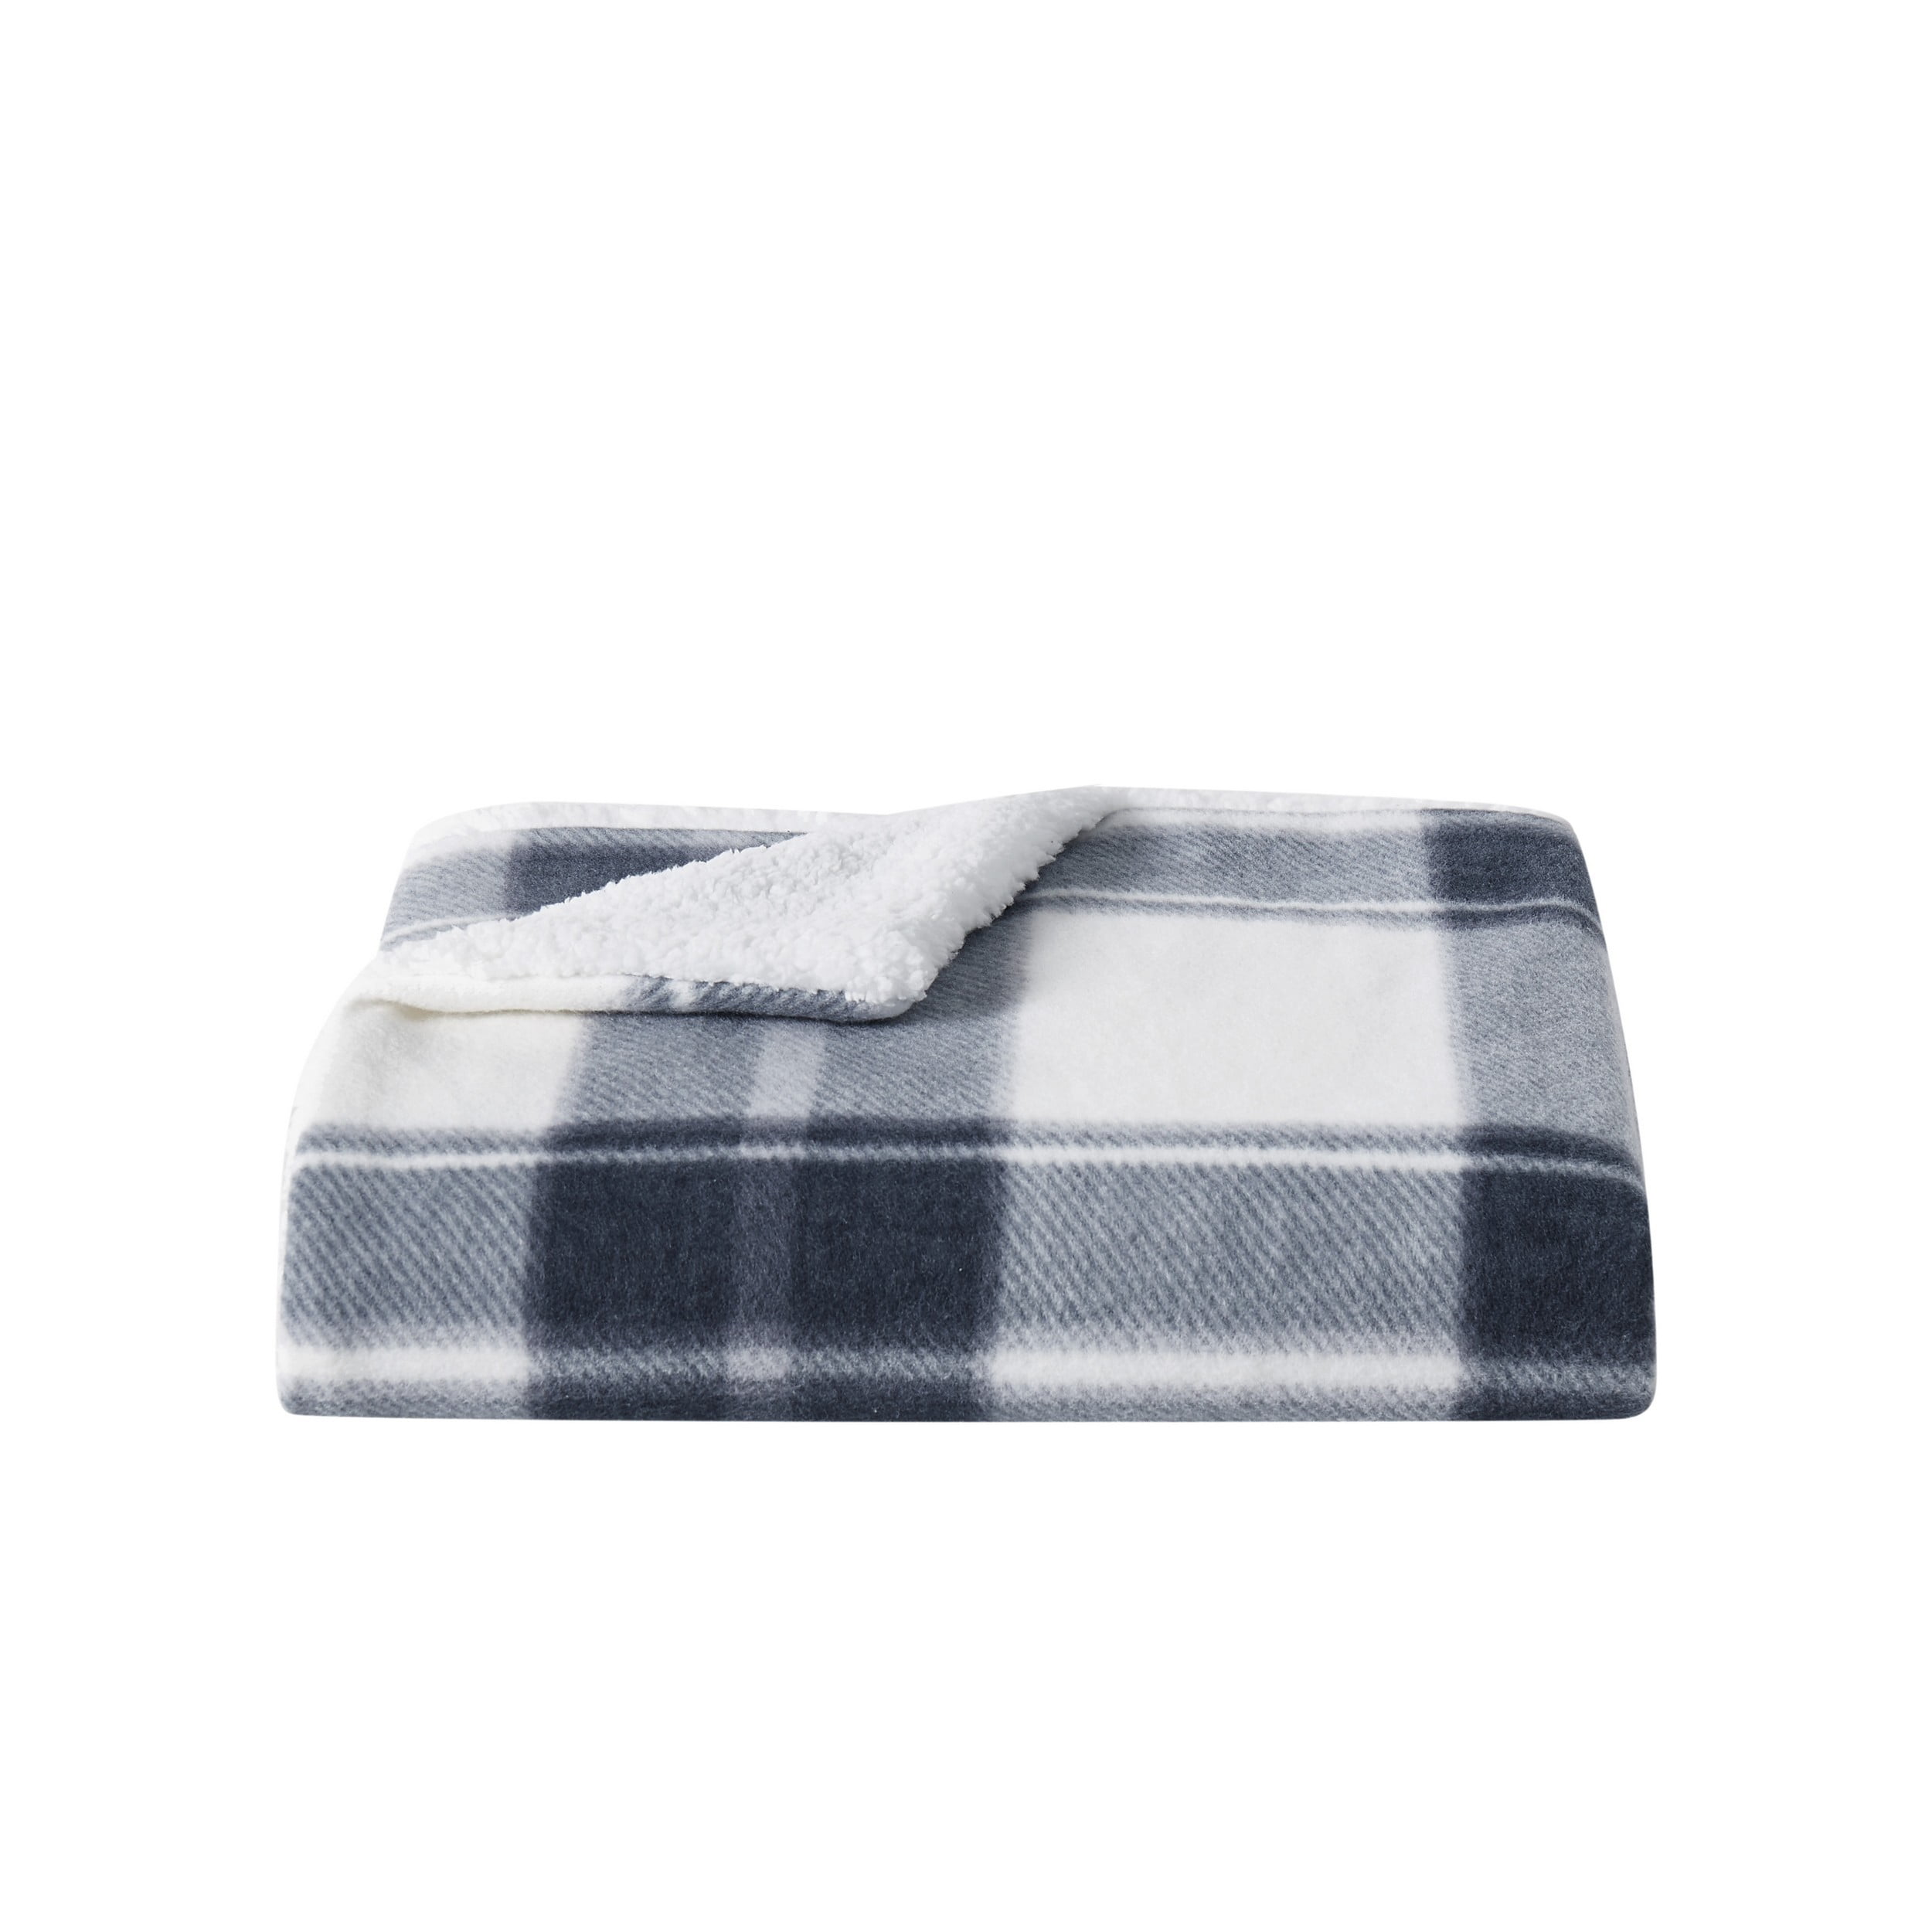 Louis Vuitton Brown Fleece Blanket • Kybershop